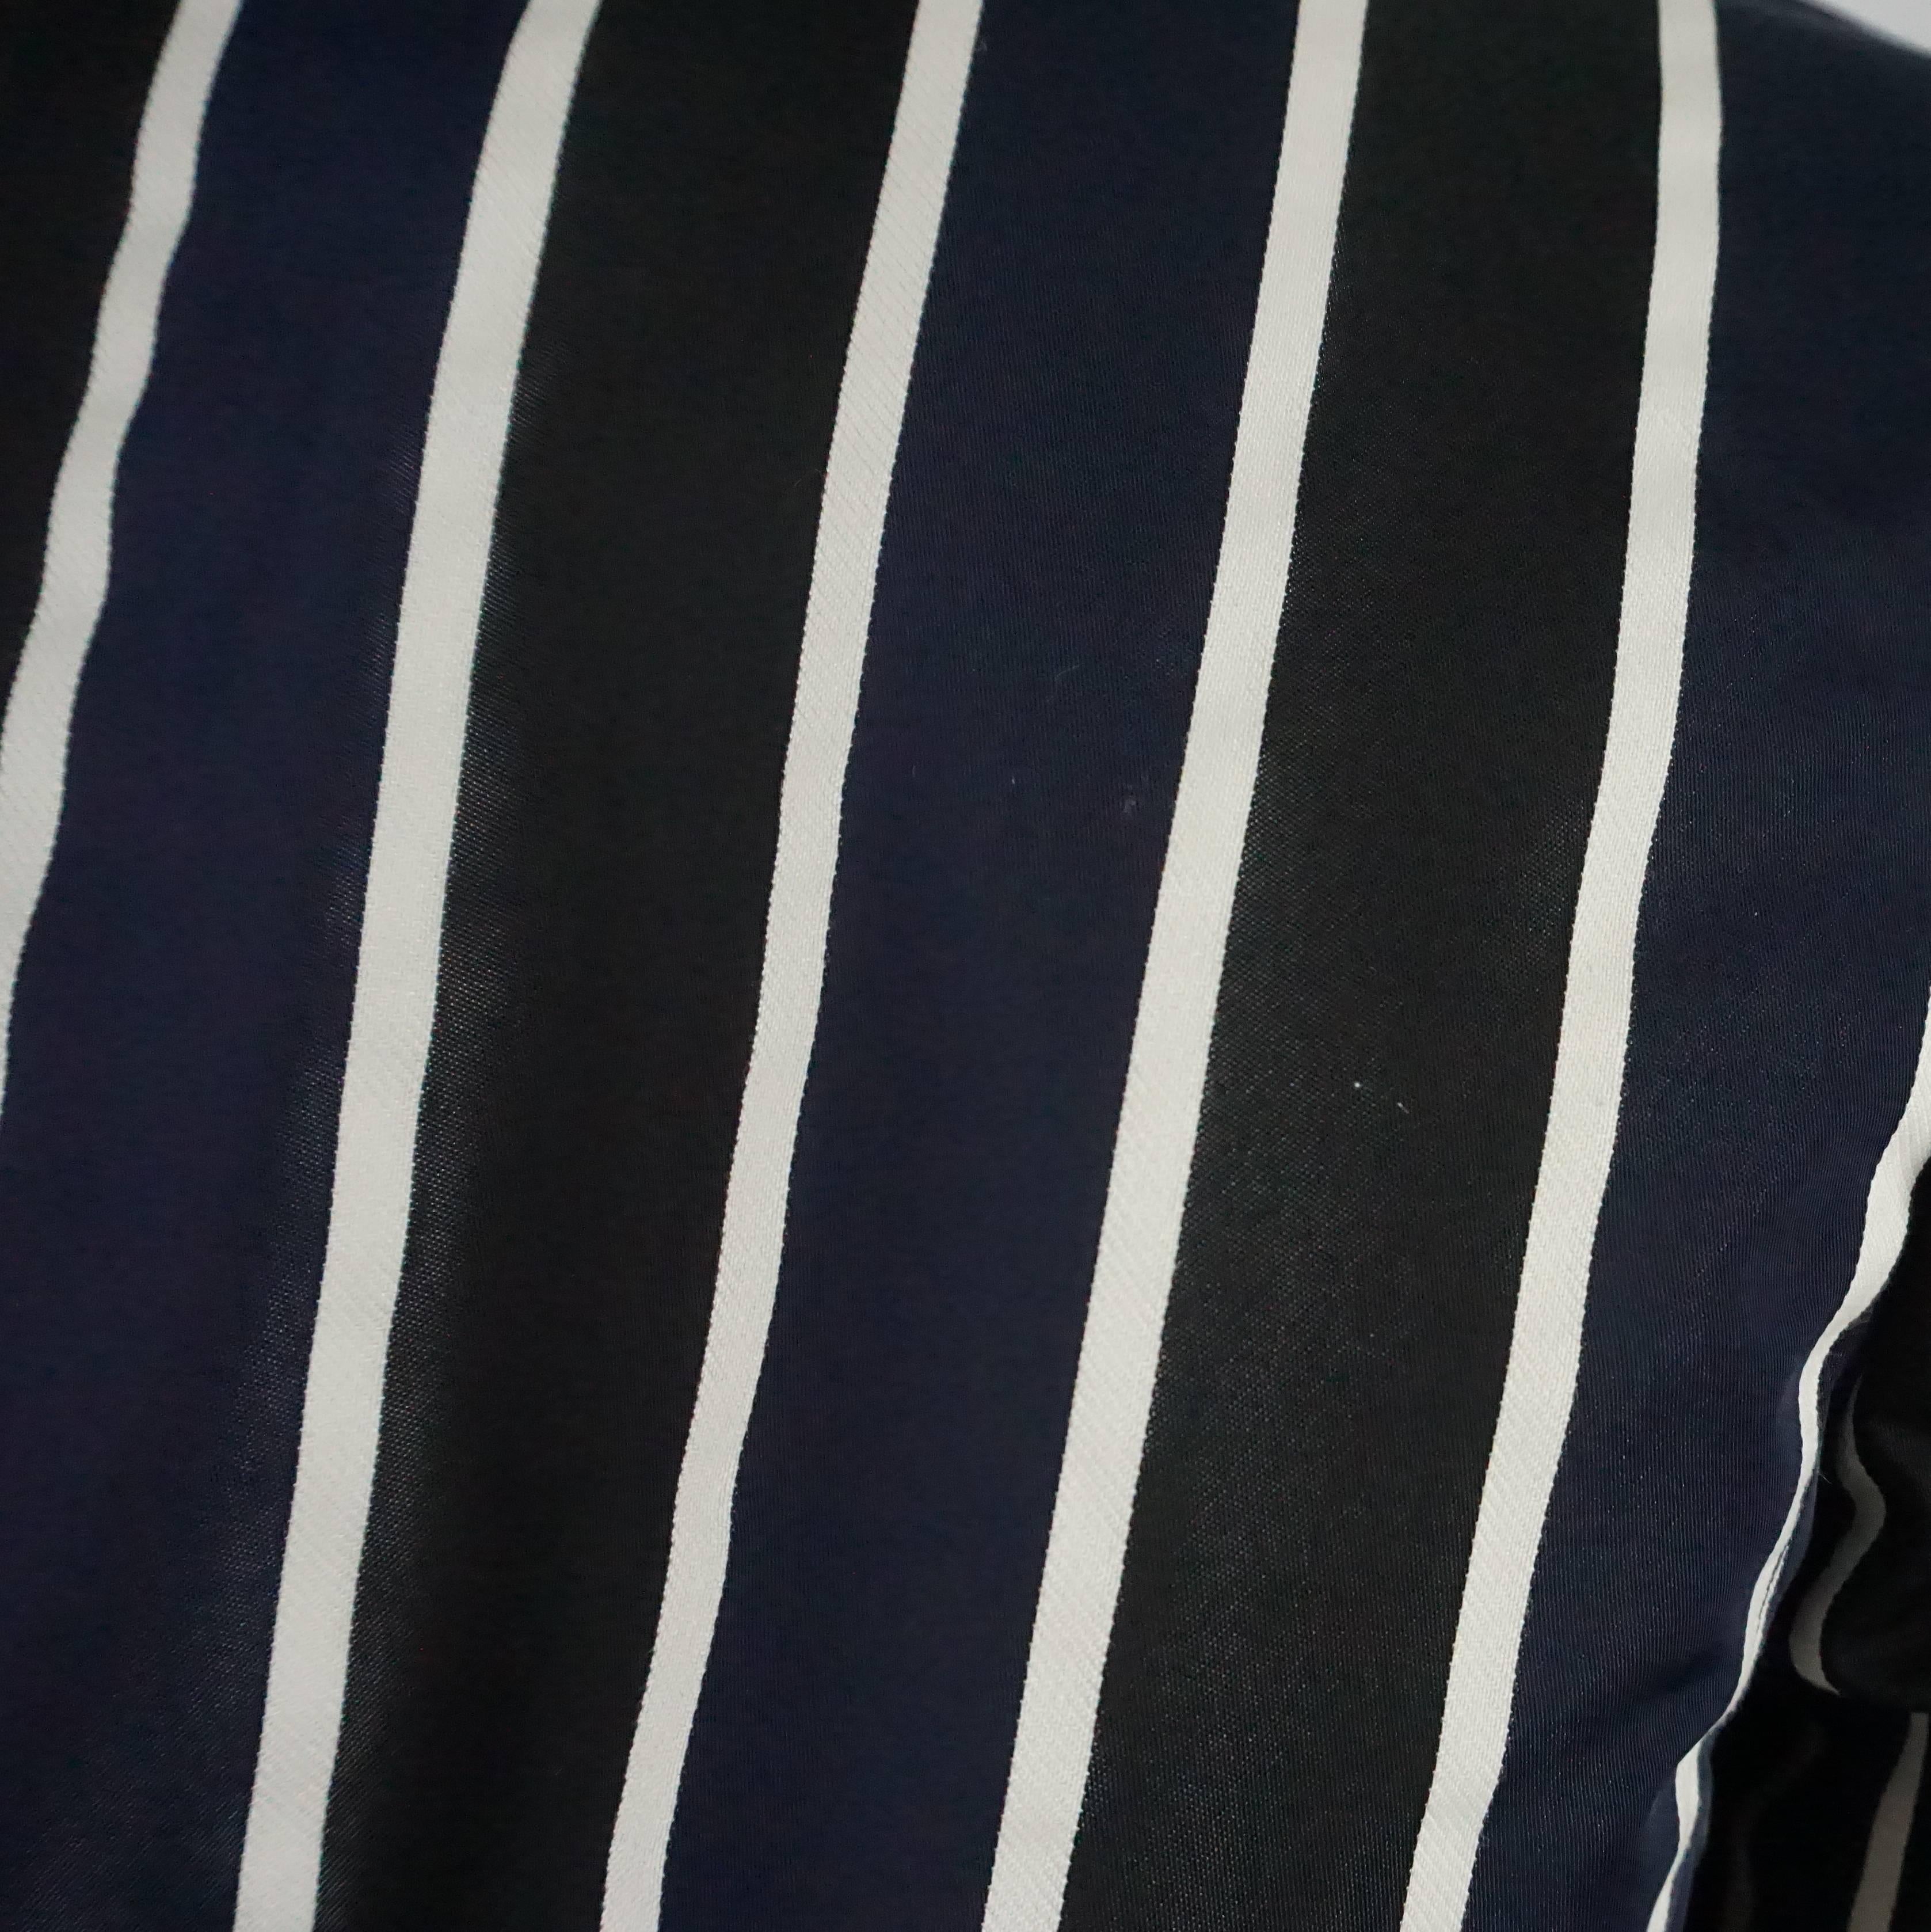 Dries Van Noten Navy and White Striped Silk Jacket - 40 1